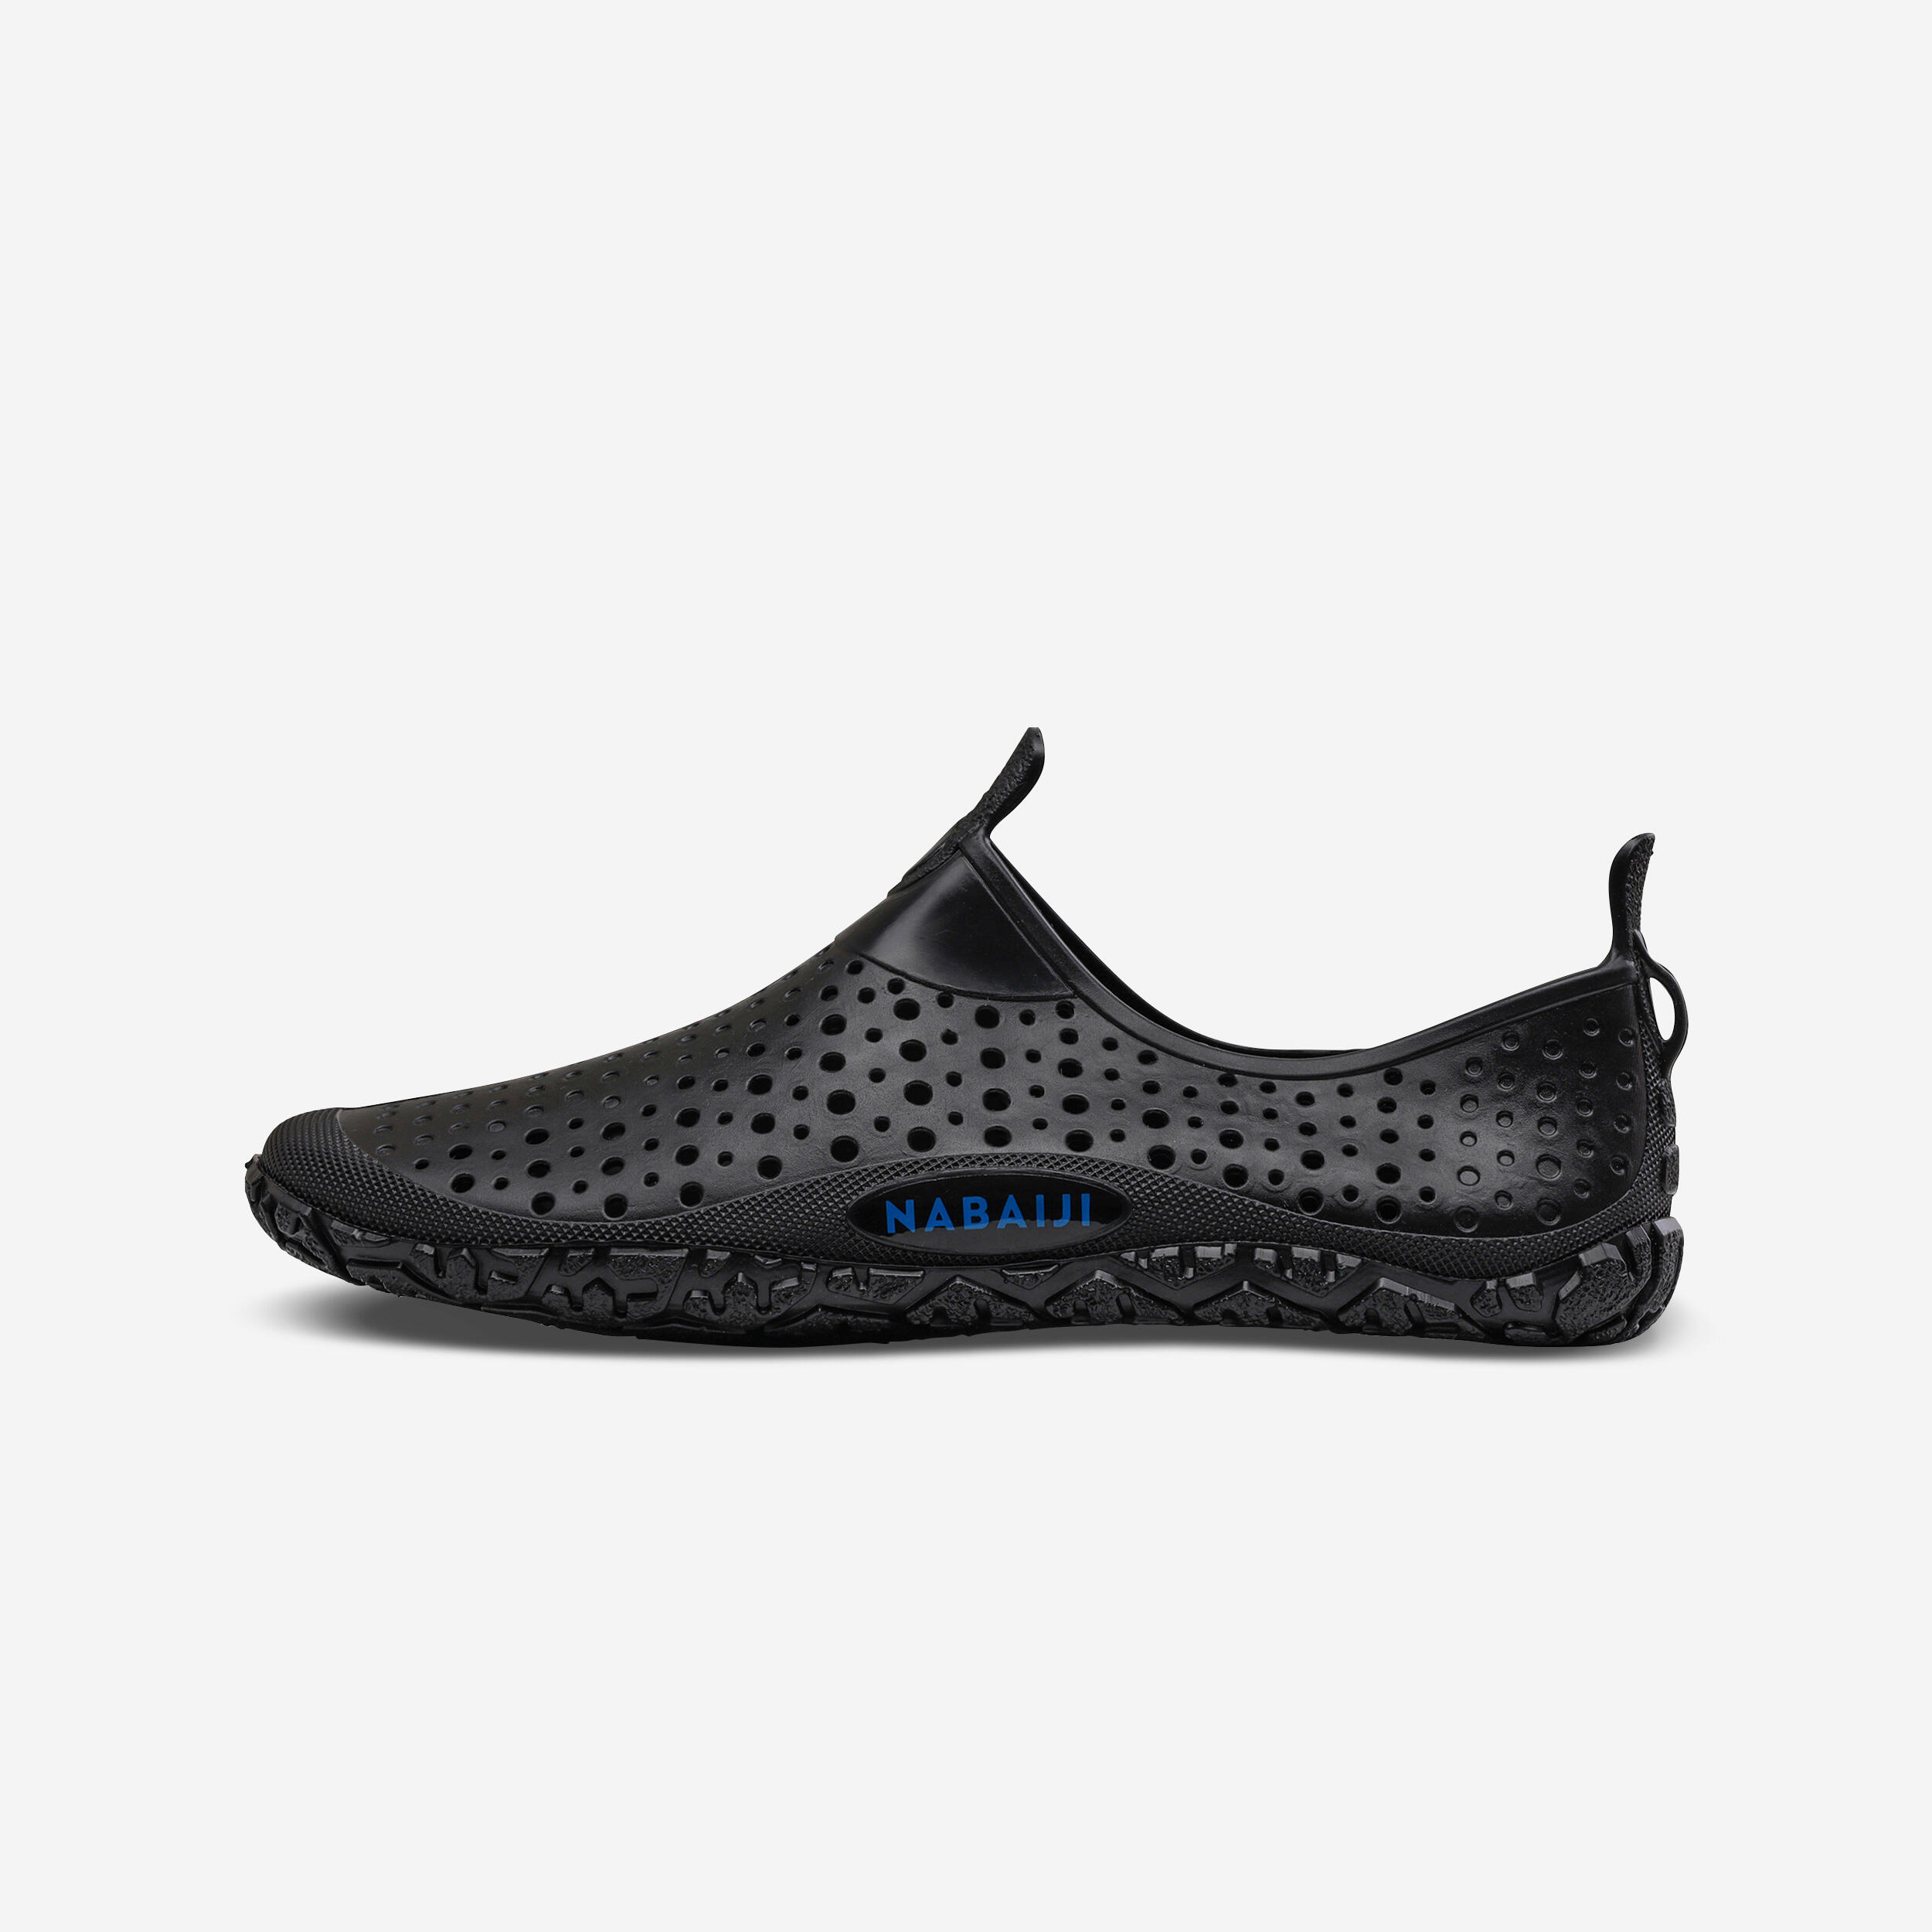 Aquabiking-Aquafit Water Shoes Aquadots Black 1/6